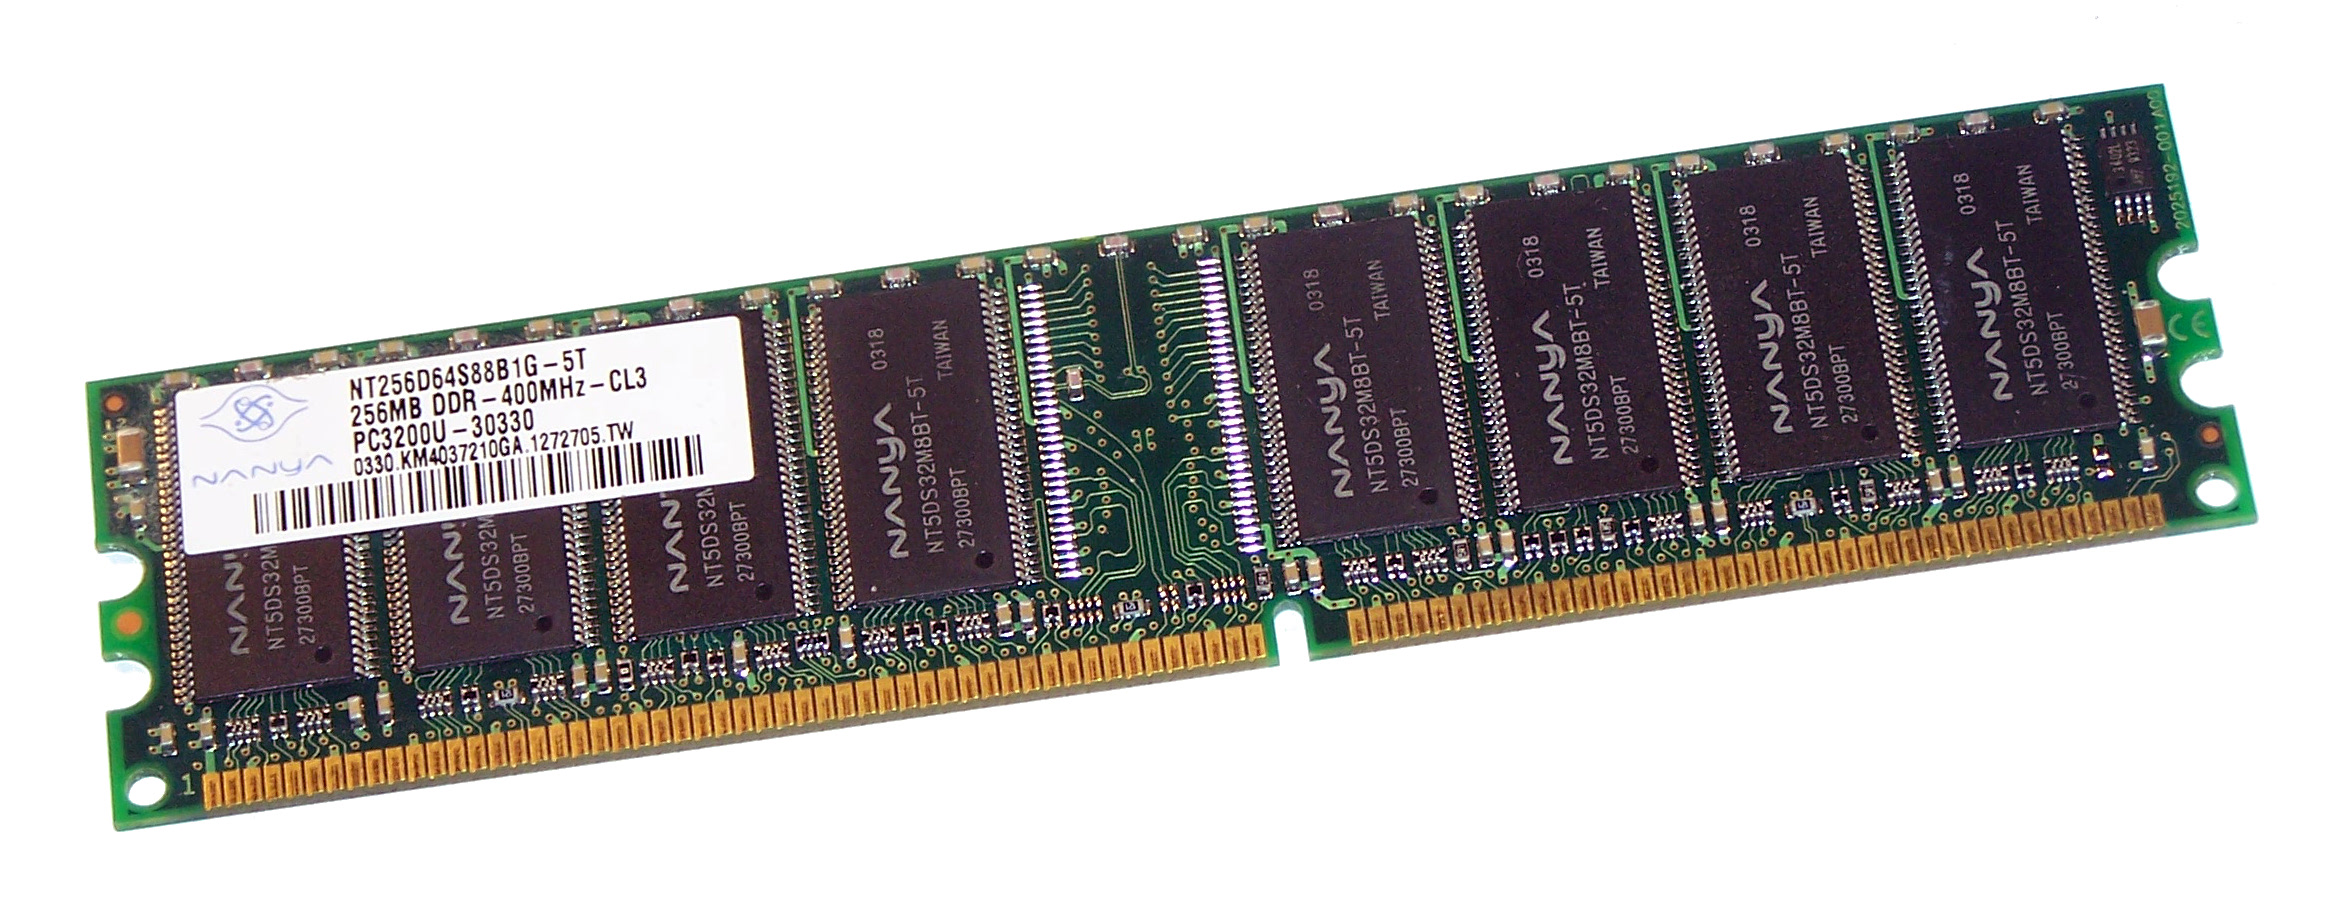 256MB Nanya DDR1 RAM PC3200U 400MHz CL3 NT256D64S88B1G-5T HP 326667-041 Memory